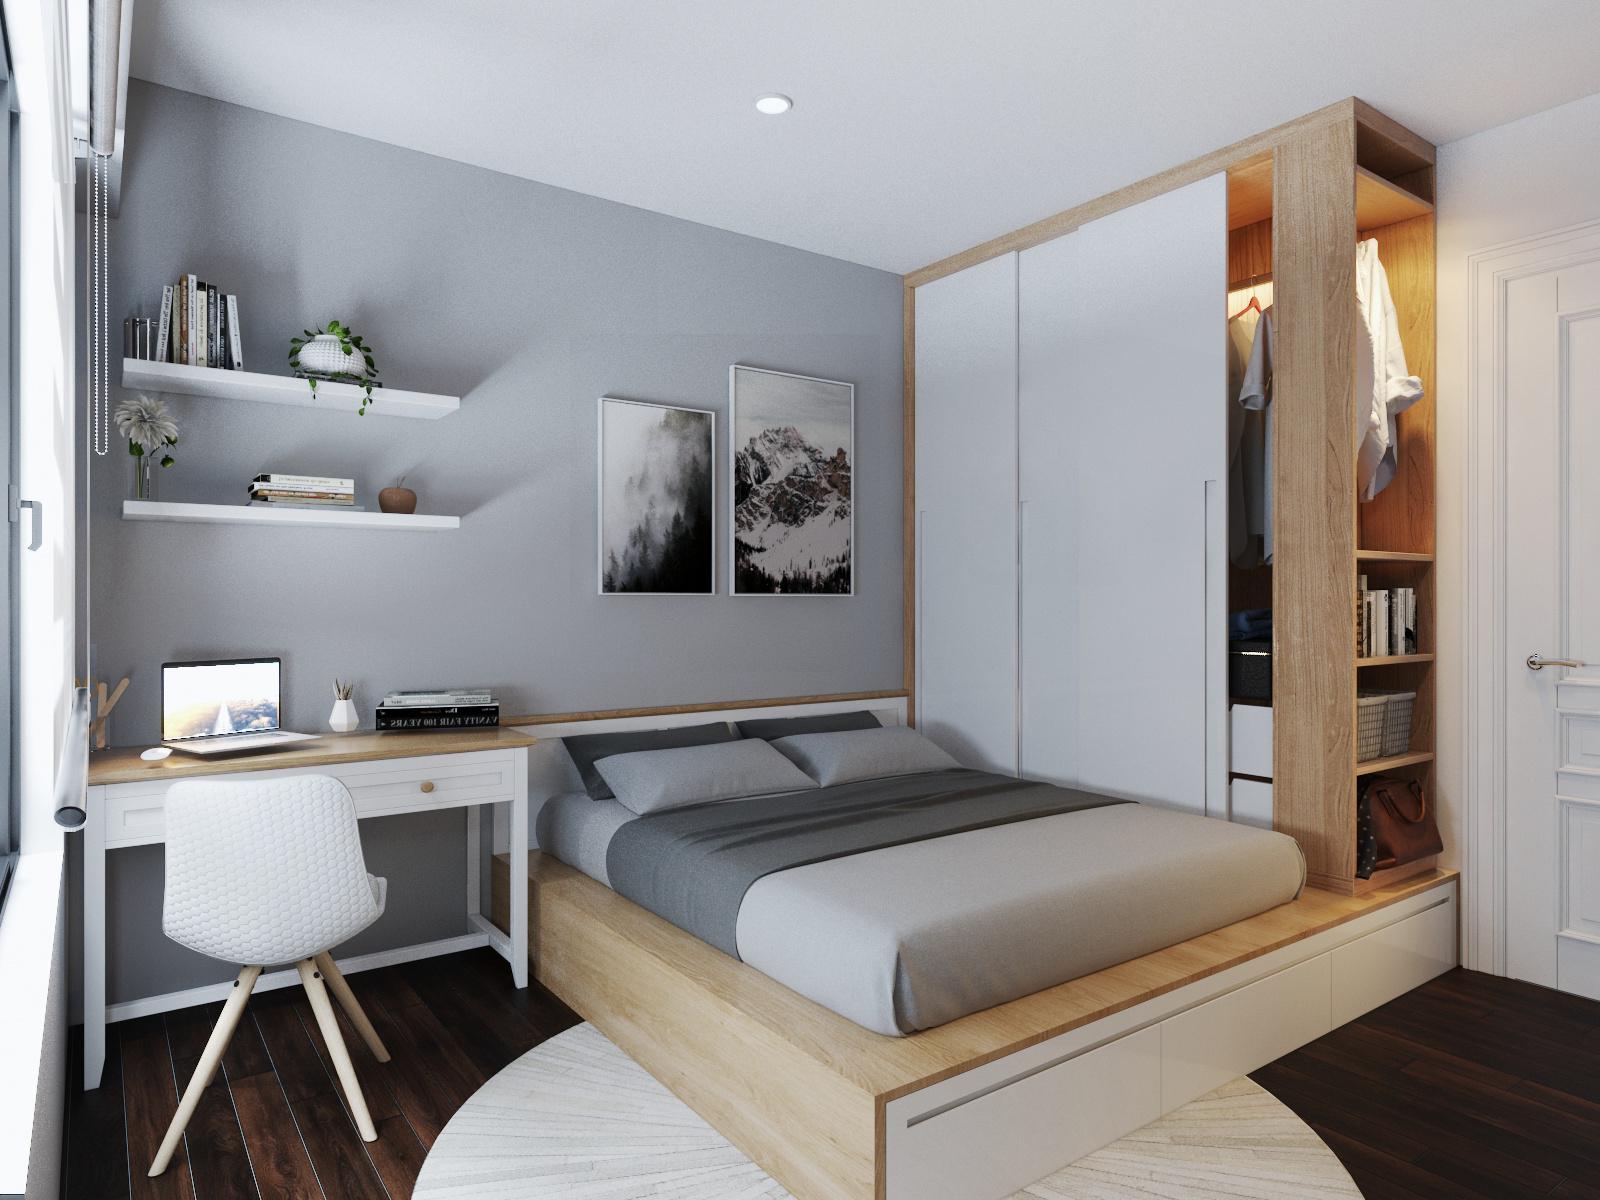 Phòng ngủ thứ hai có diện tích nhỏ hơn một chút, được thiết kế theo phong cách Country House hiện đại, tập trung vào công năng sử dụng và sự thoải mái.